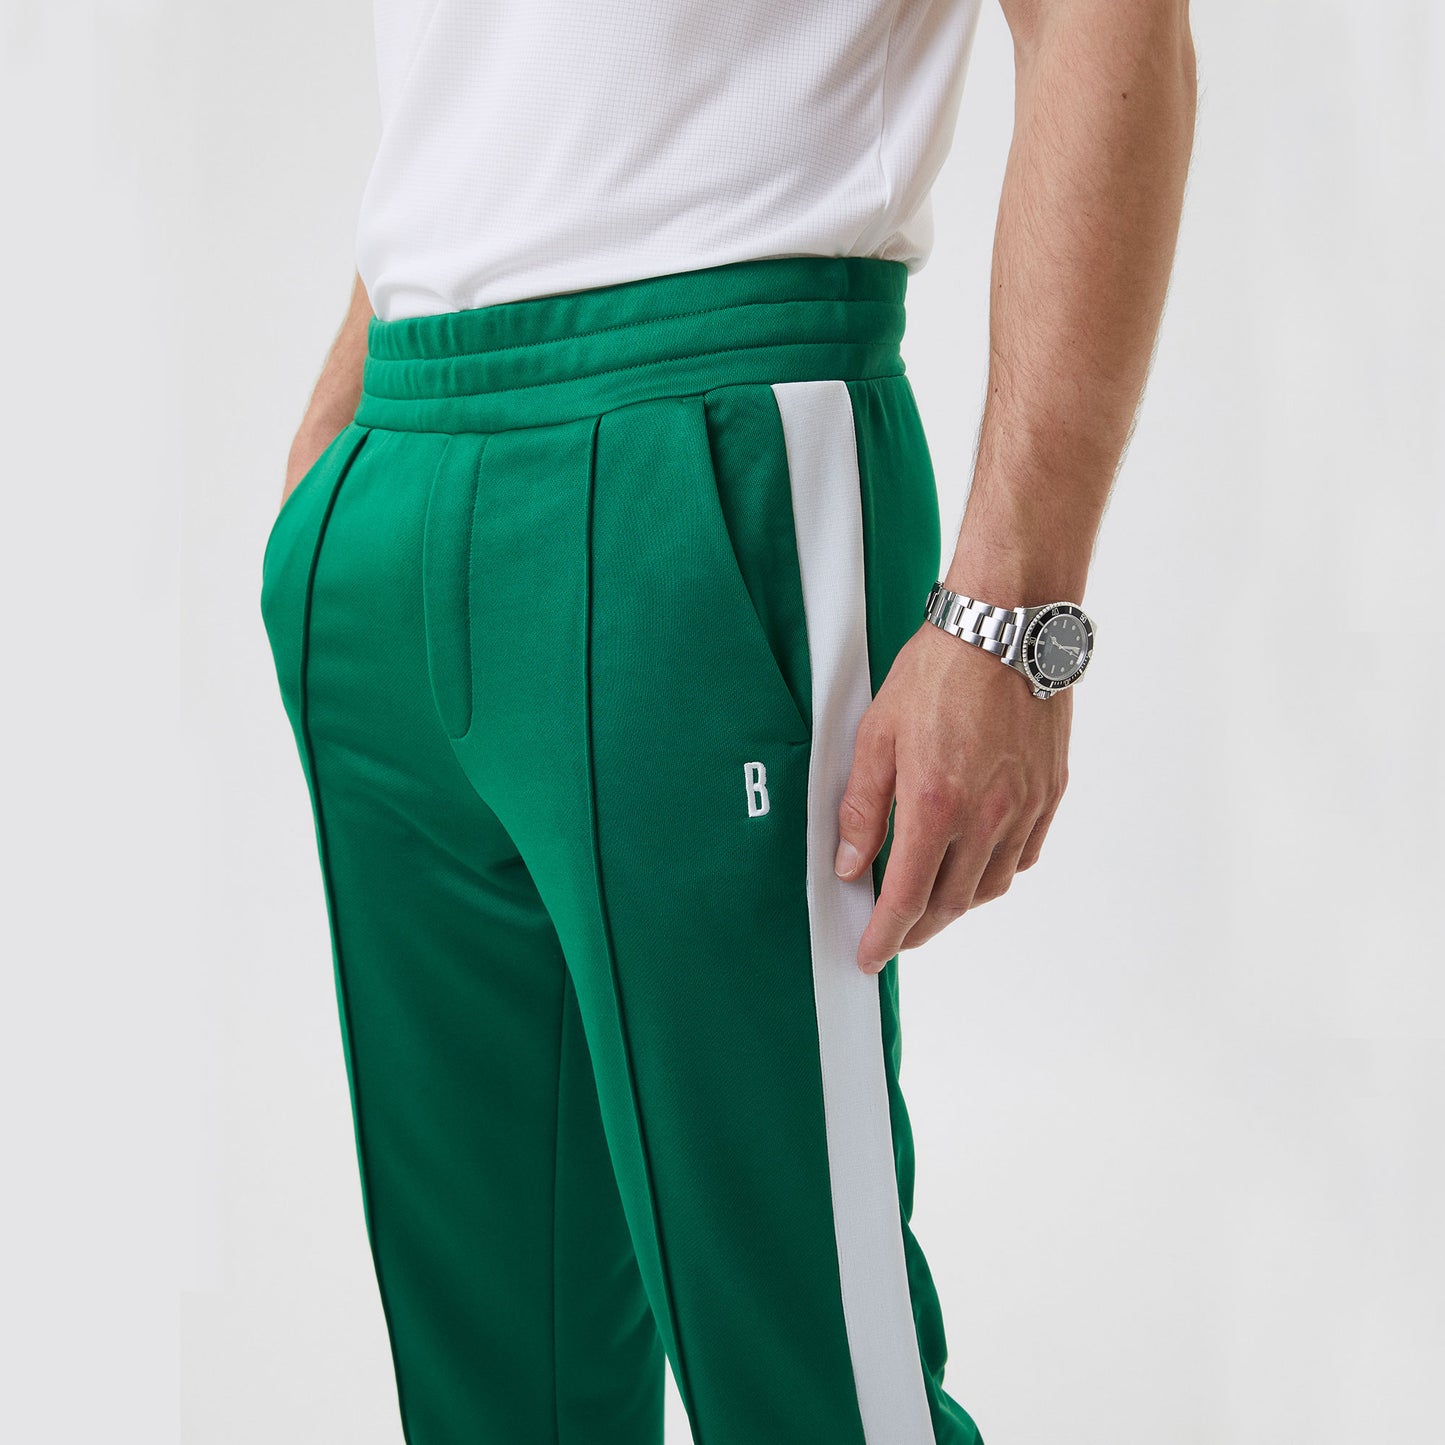 Björn Borg Ace Men's Tennis Pants Green (3)